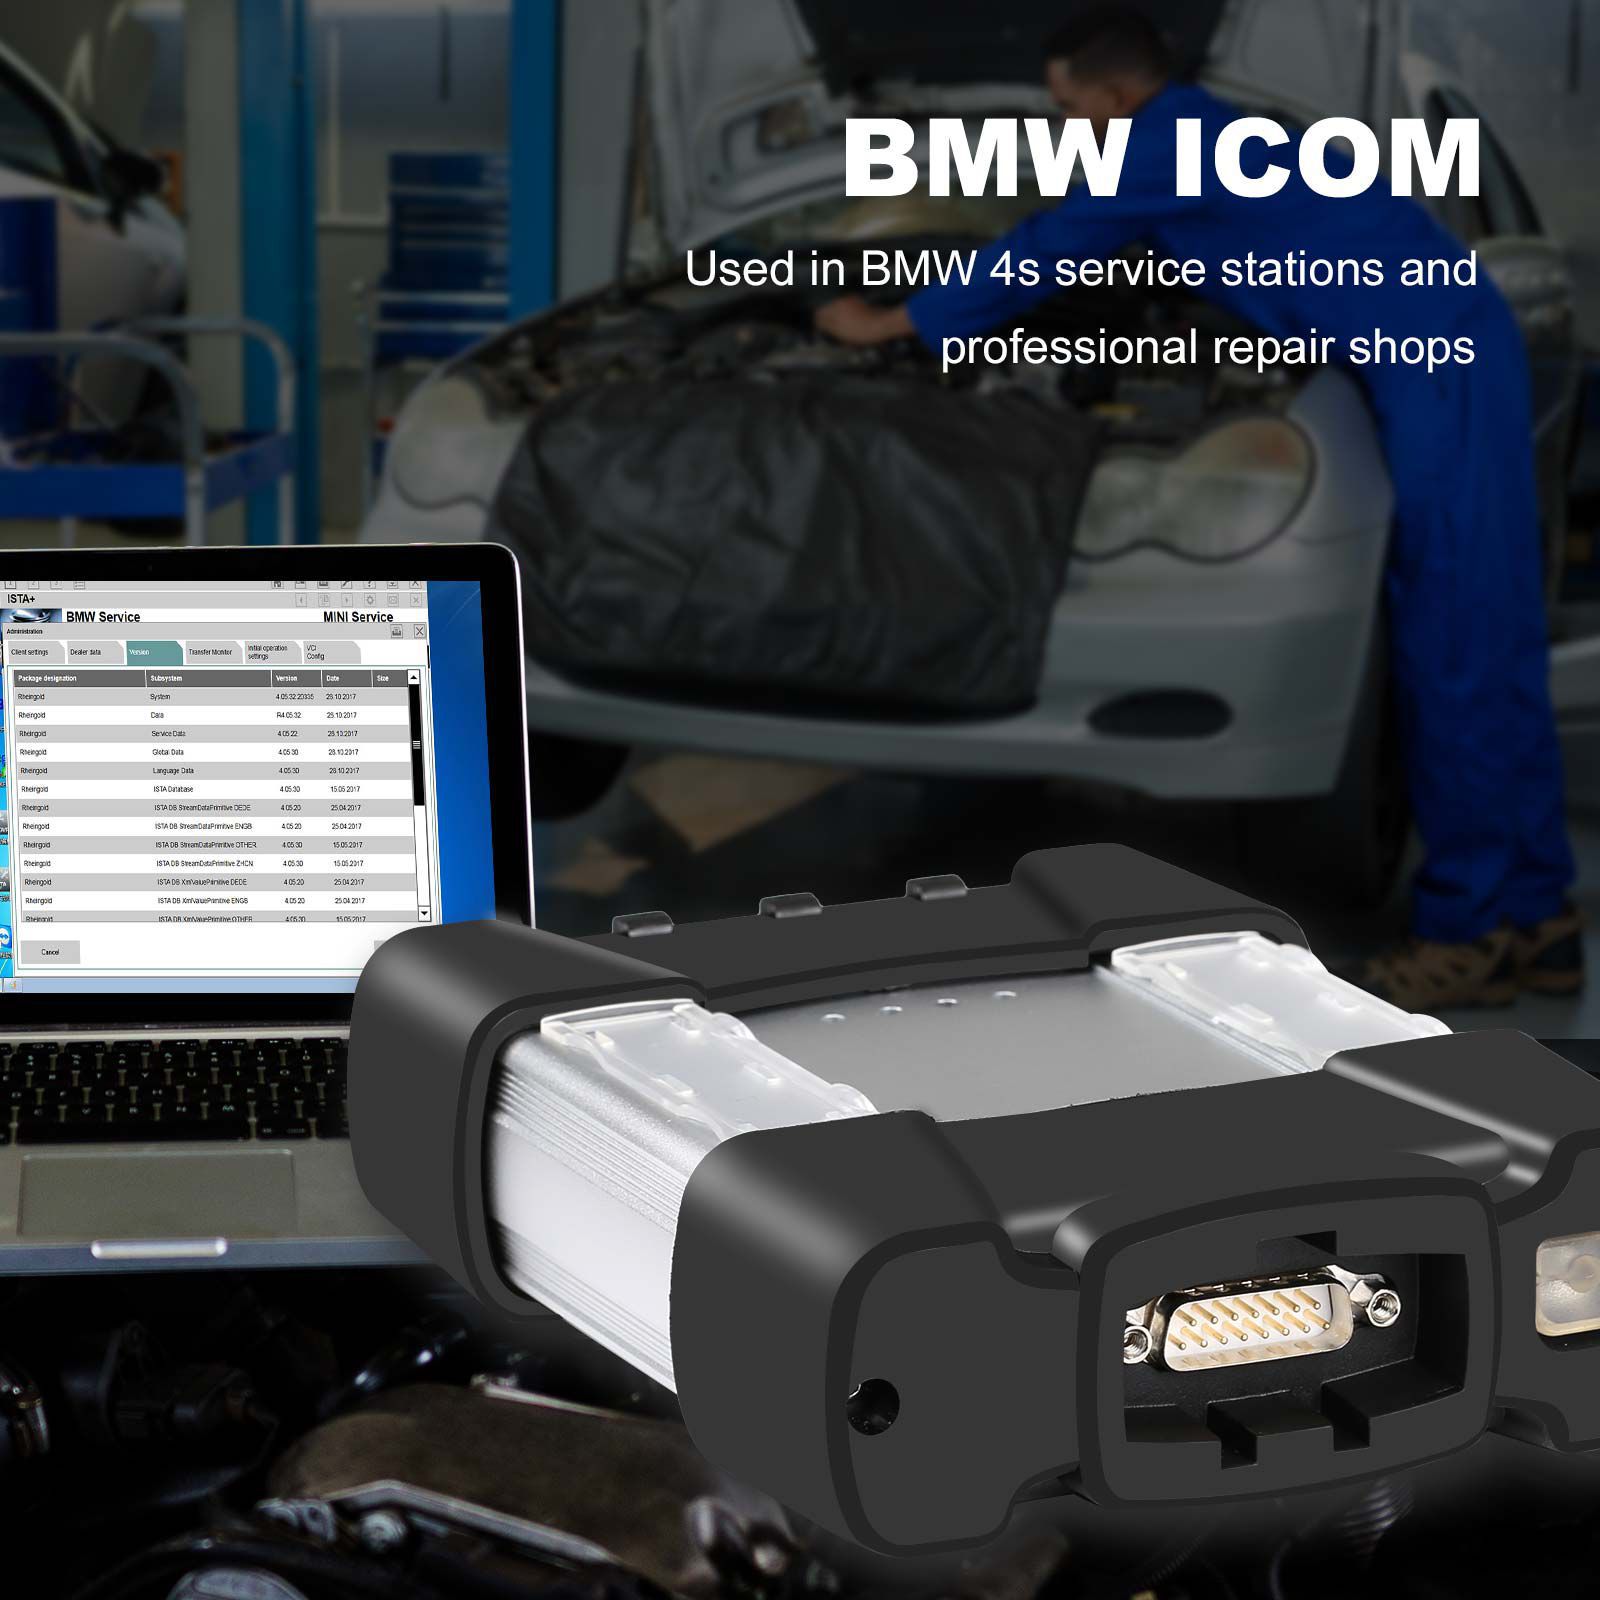 Ferramenta diagnóstica profissional BMW ICOM NEXT com função WIFI